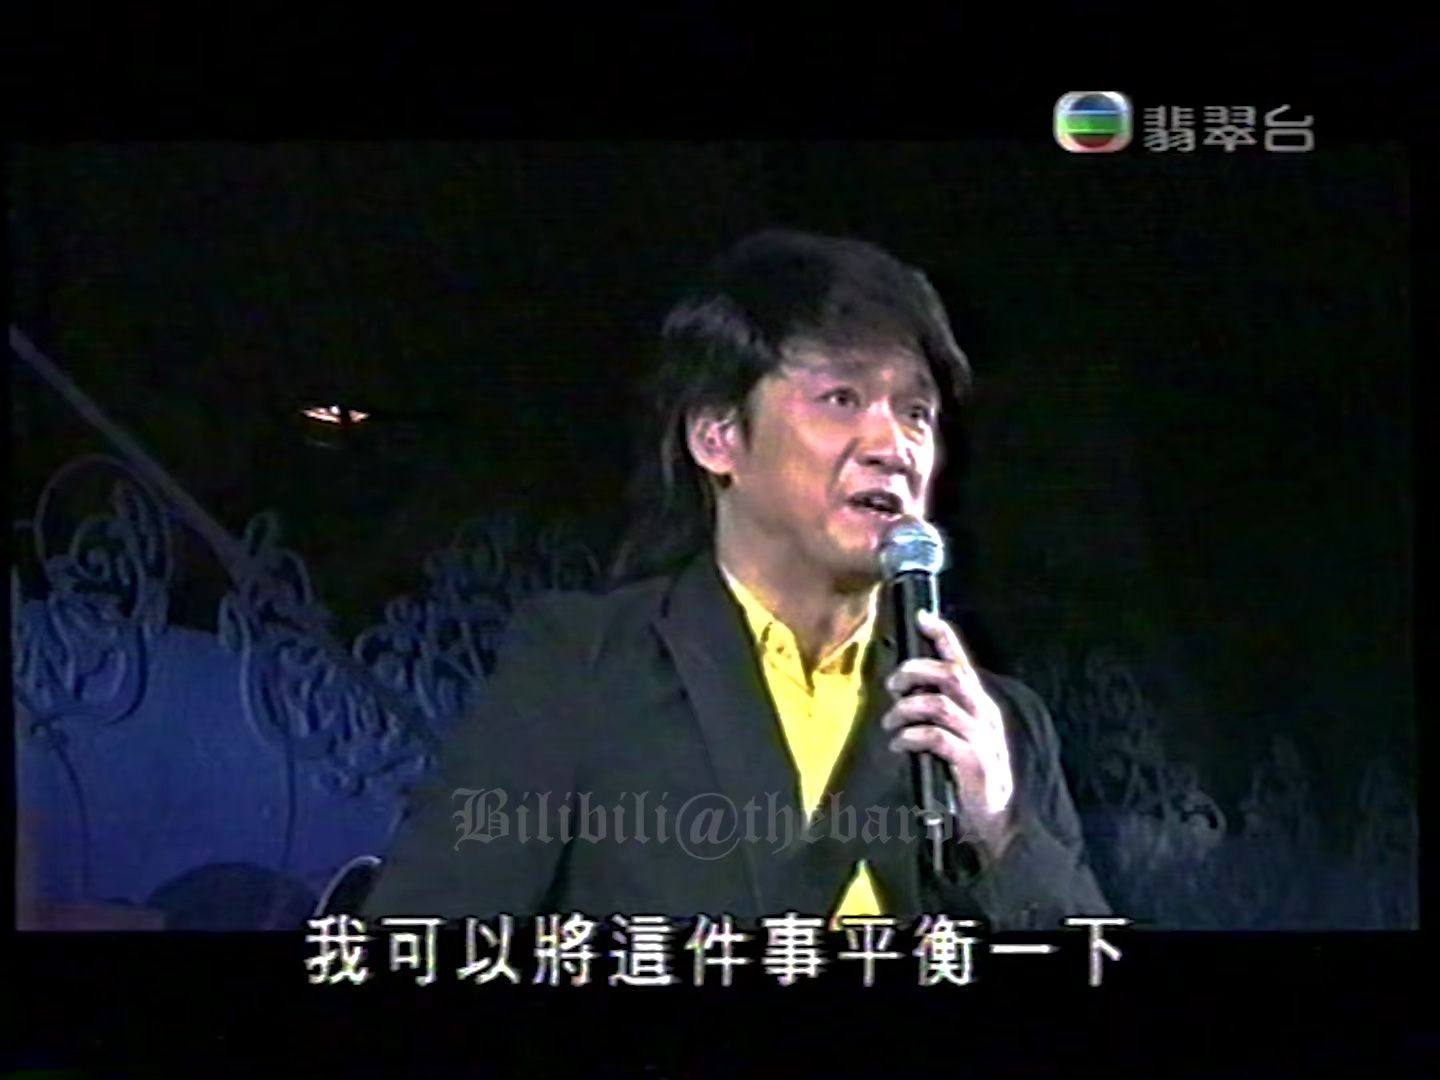 【周华健】《独上西楼》2006 往事只能回味·刘家昌音乐会 现场版 TVB Version｜删减嘉宾片段